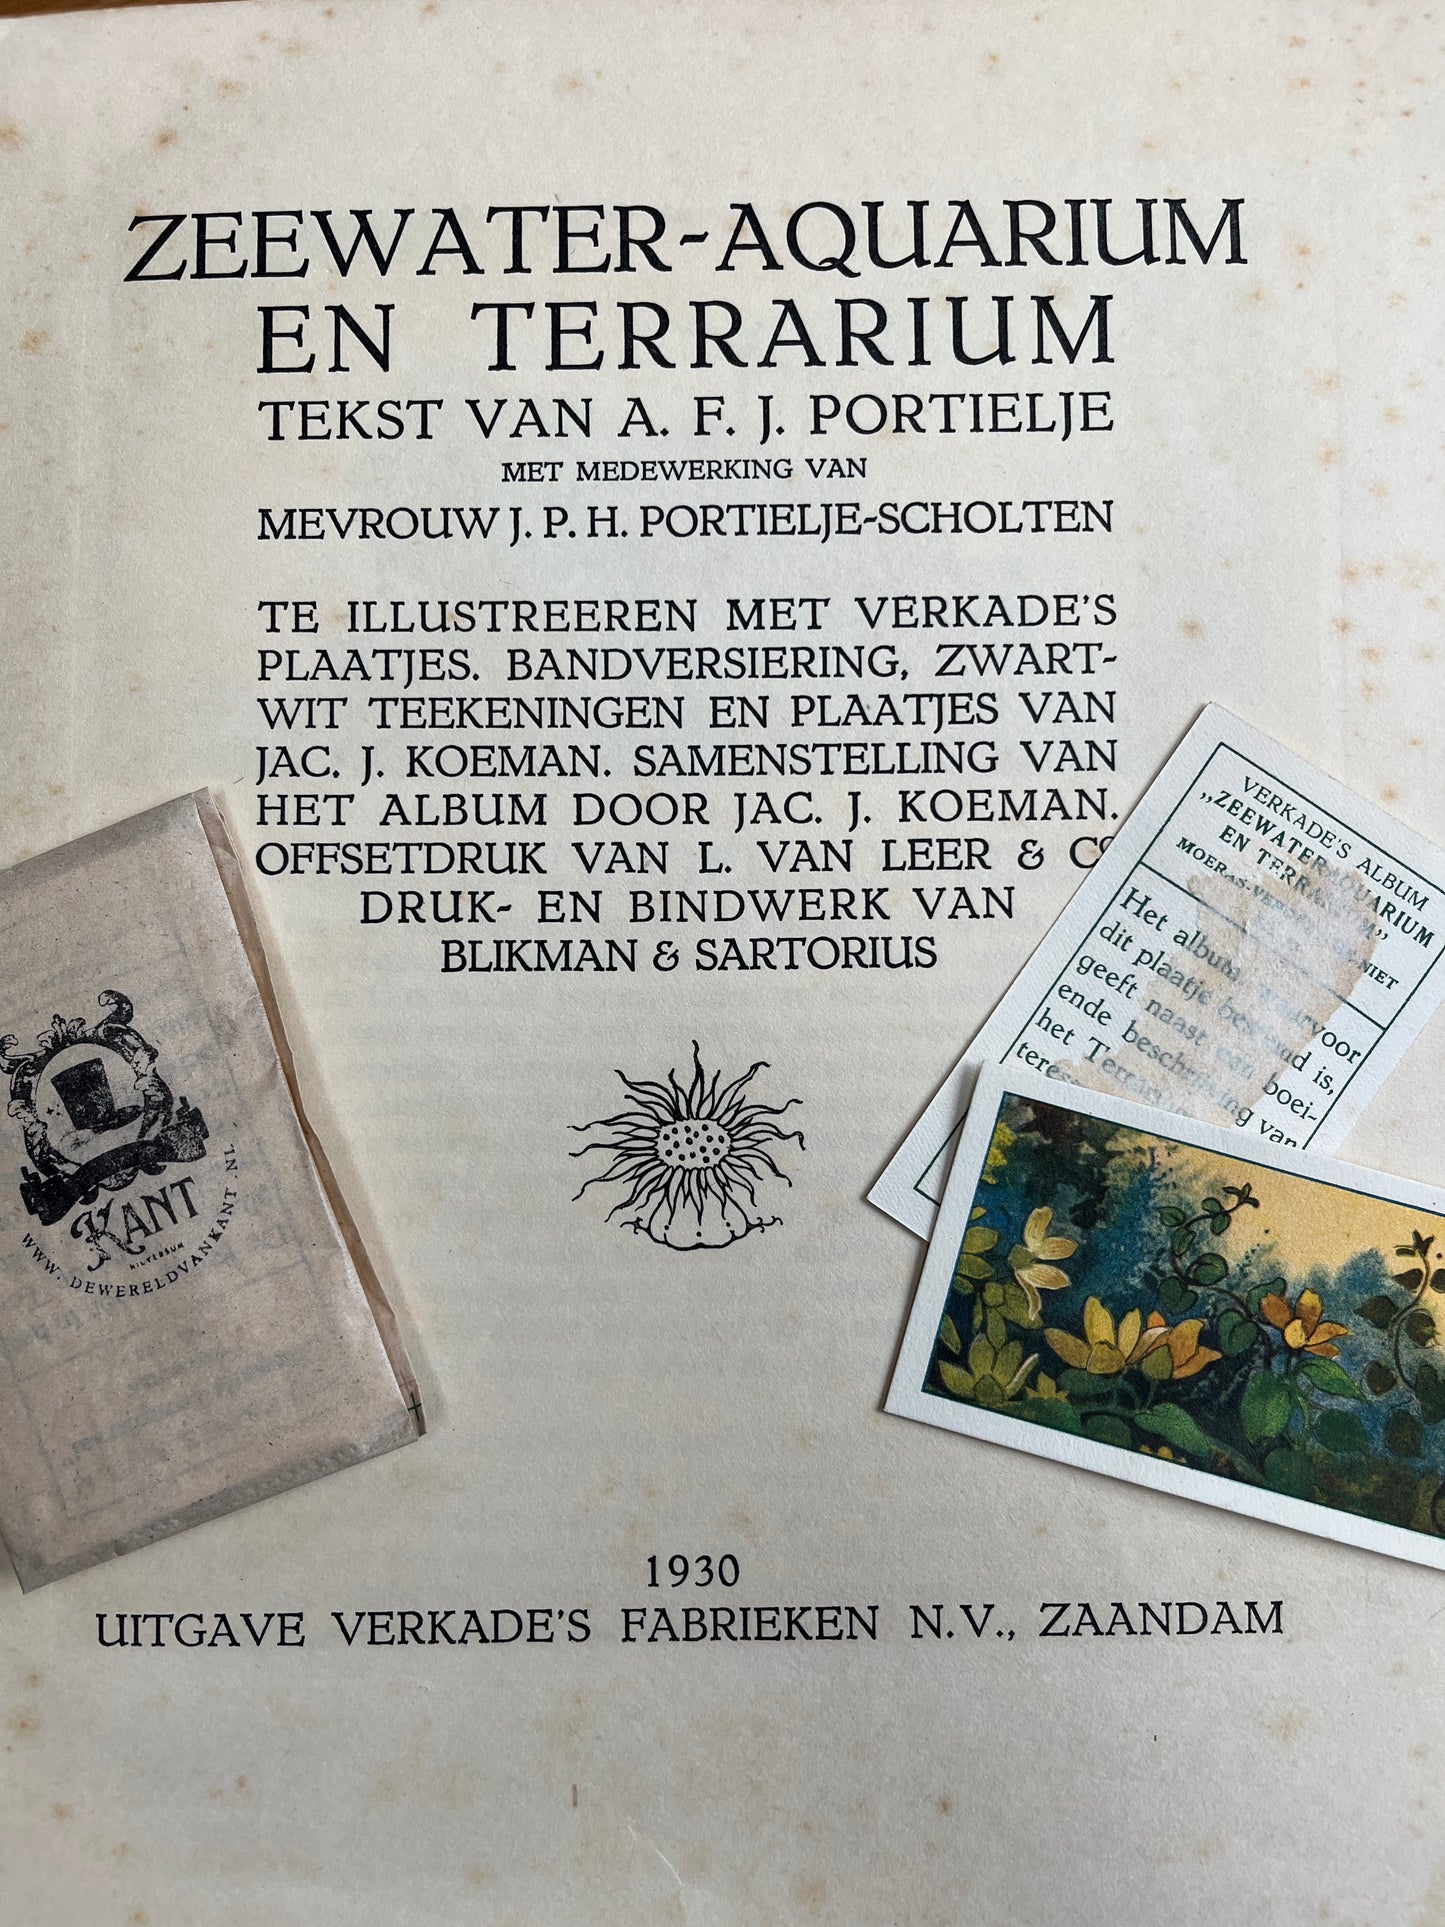 6 Verkade pictures Seawater aquarium and terrarium 1930 (73-78)